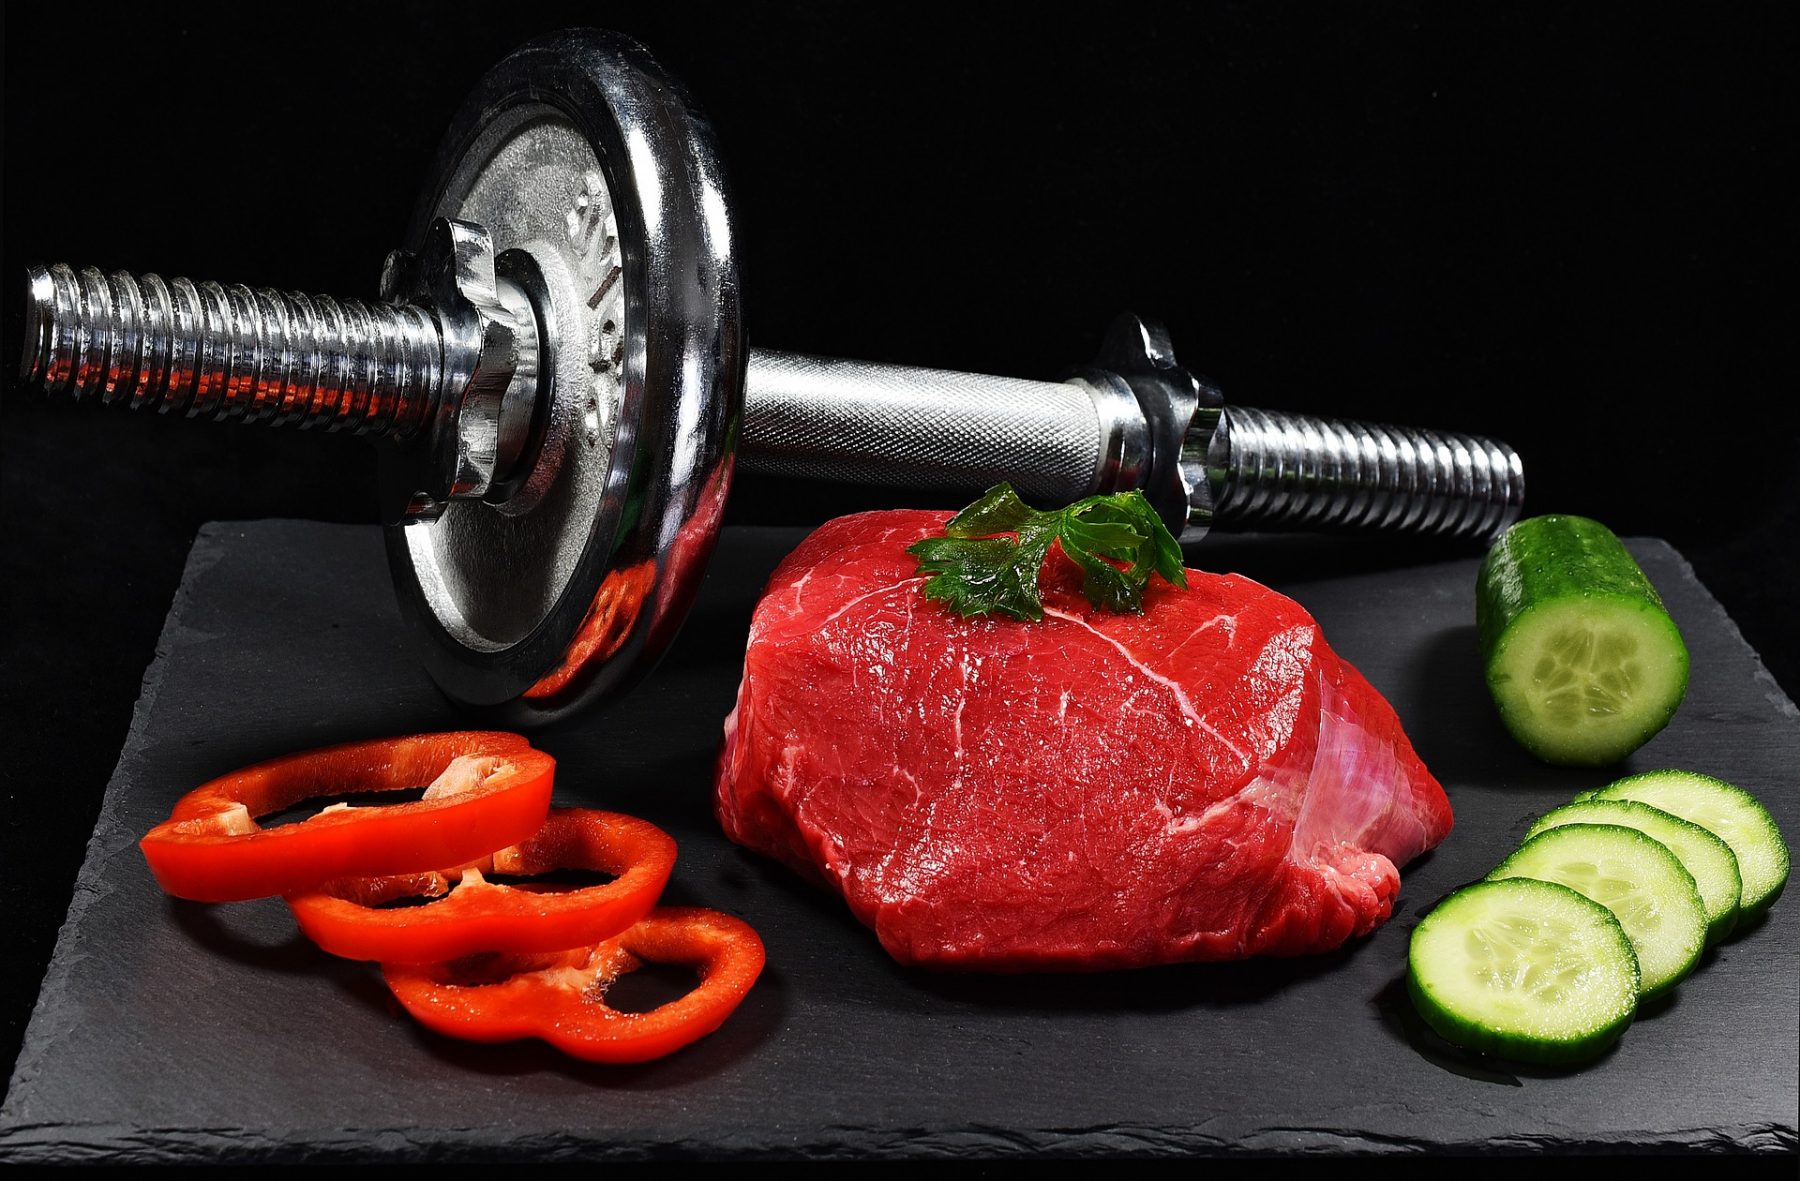 Απώλεια βάρους: Η αυξημένη πρόσληψη πρωτεΐνης αποτρέπει την ανάκτηση βάρους μετά από δίαιτα